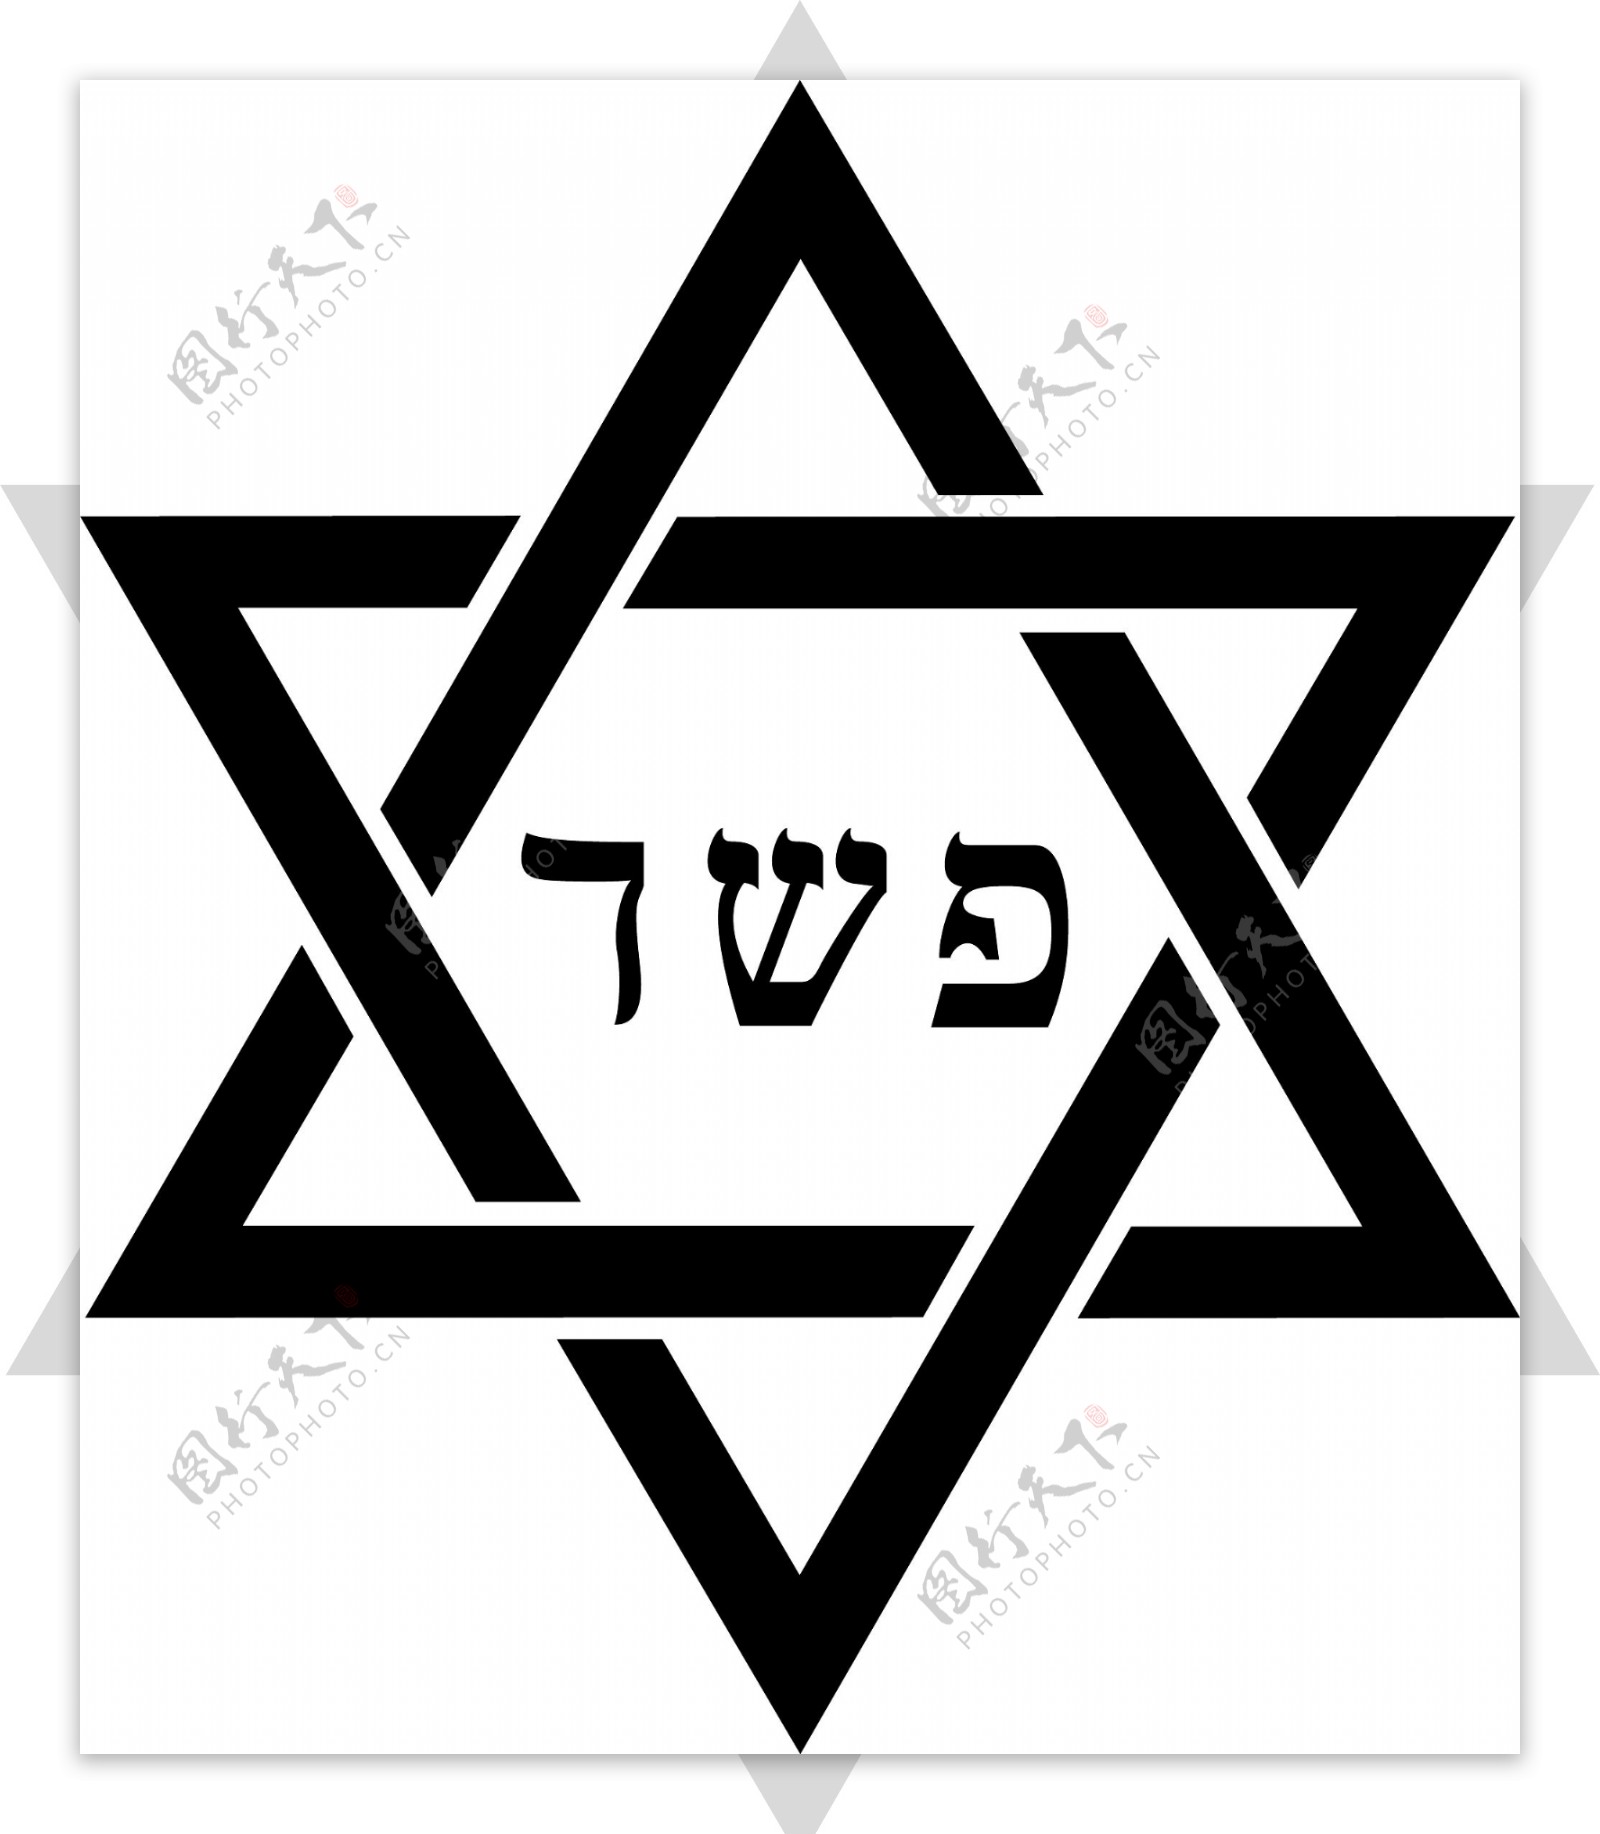 犹太教的象征